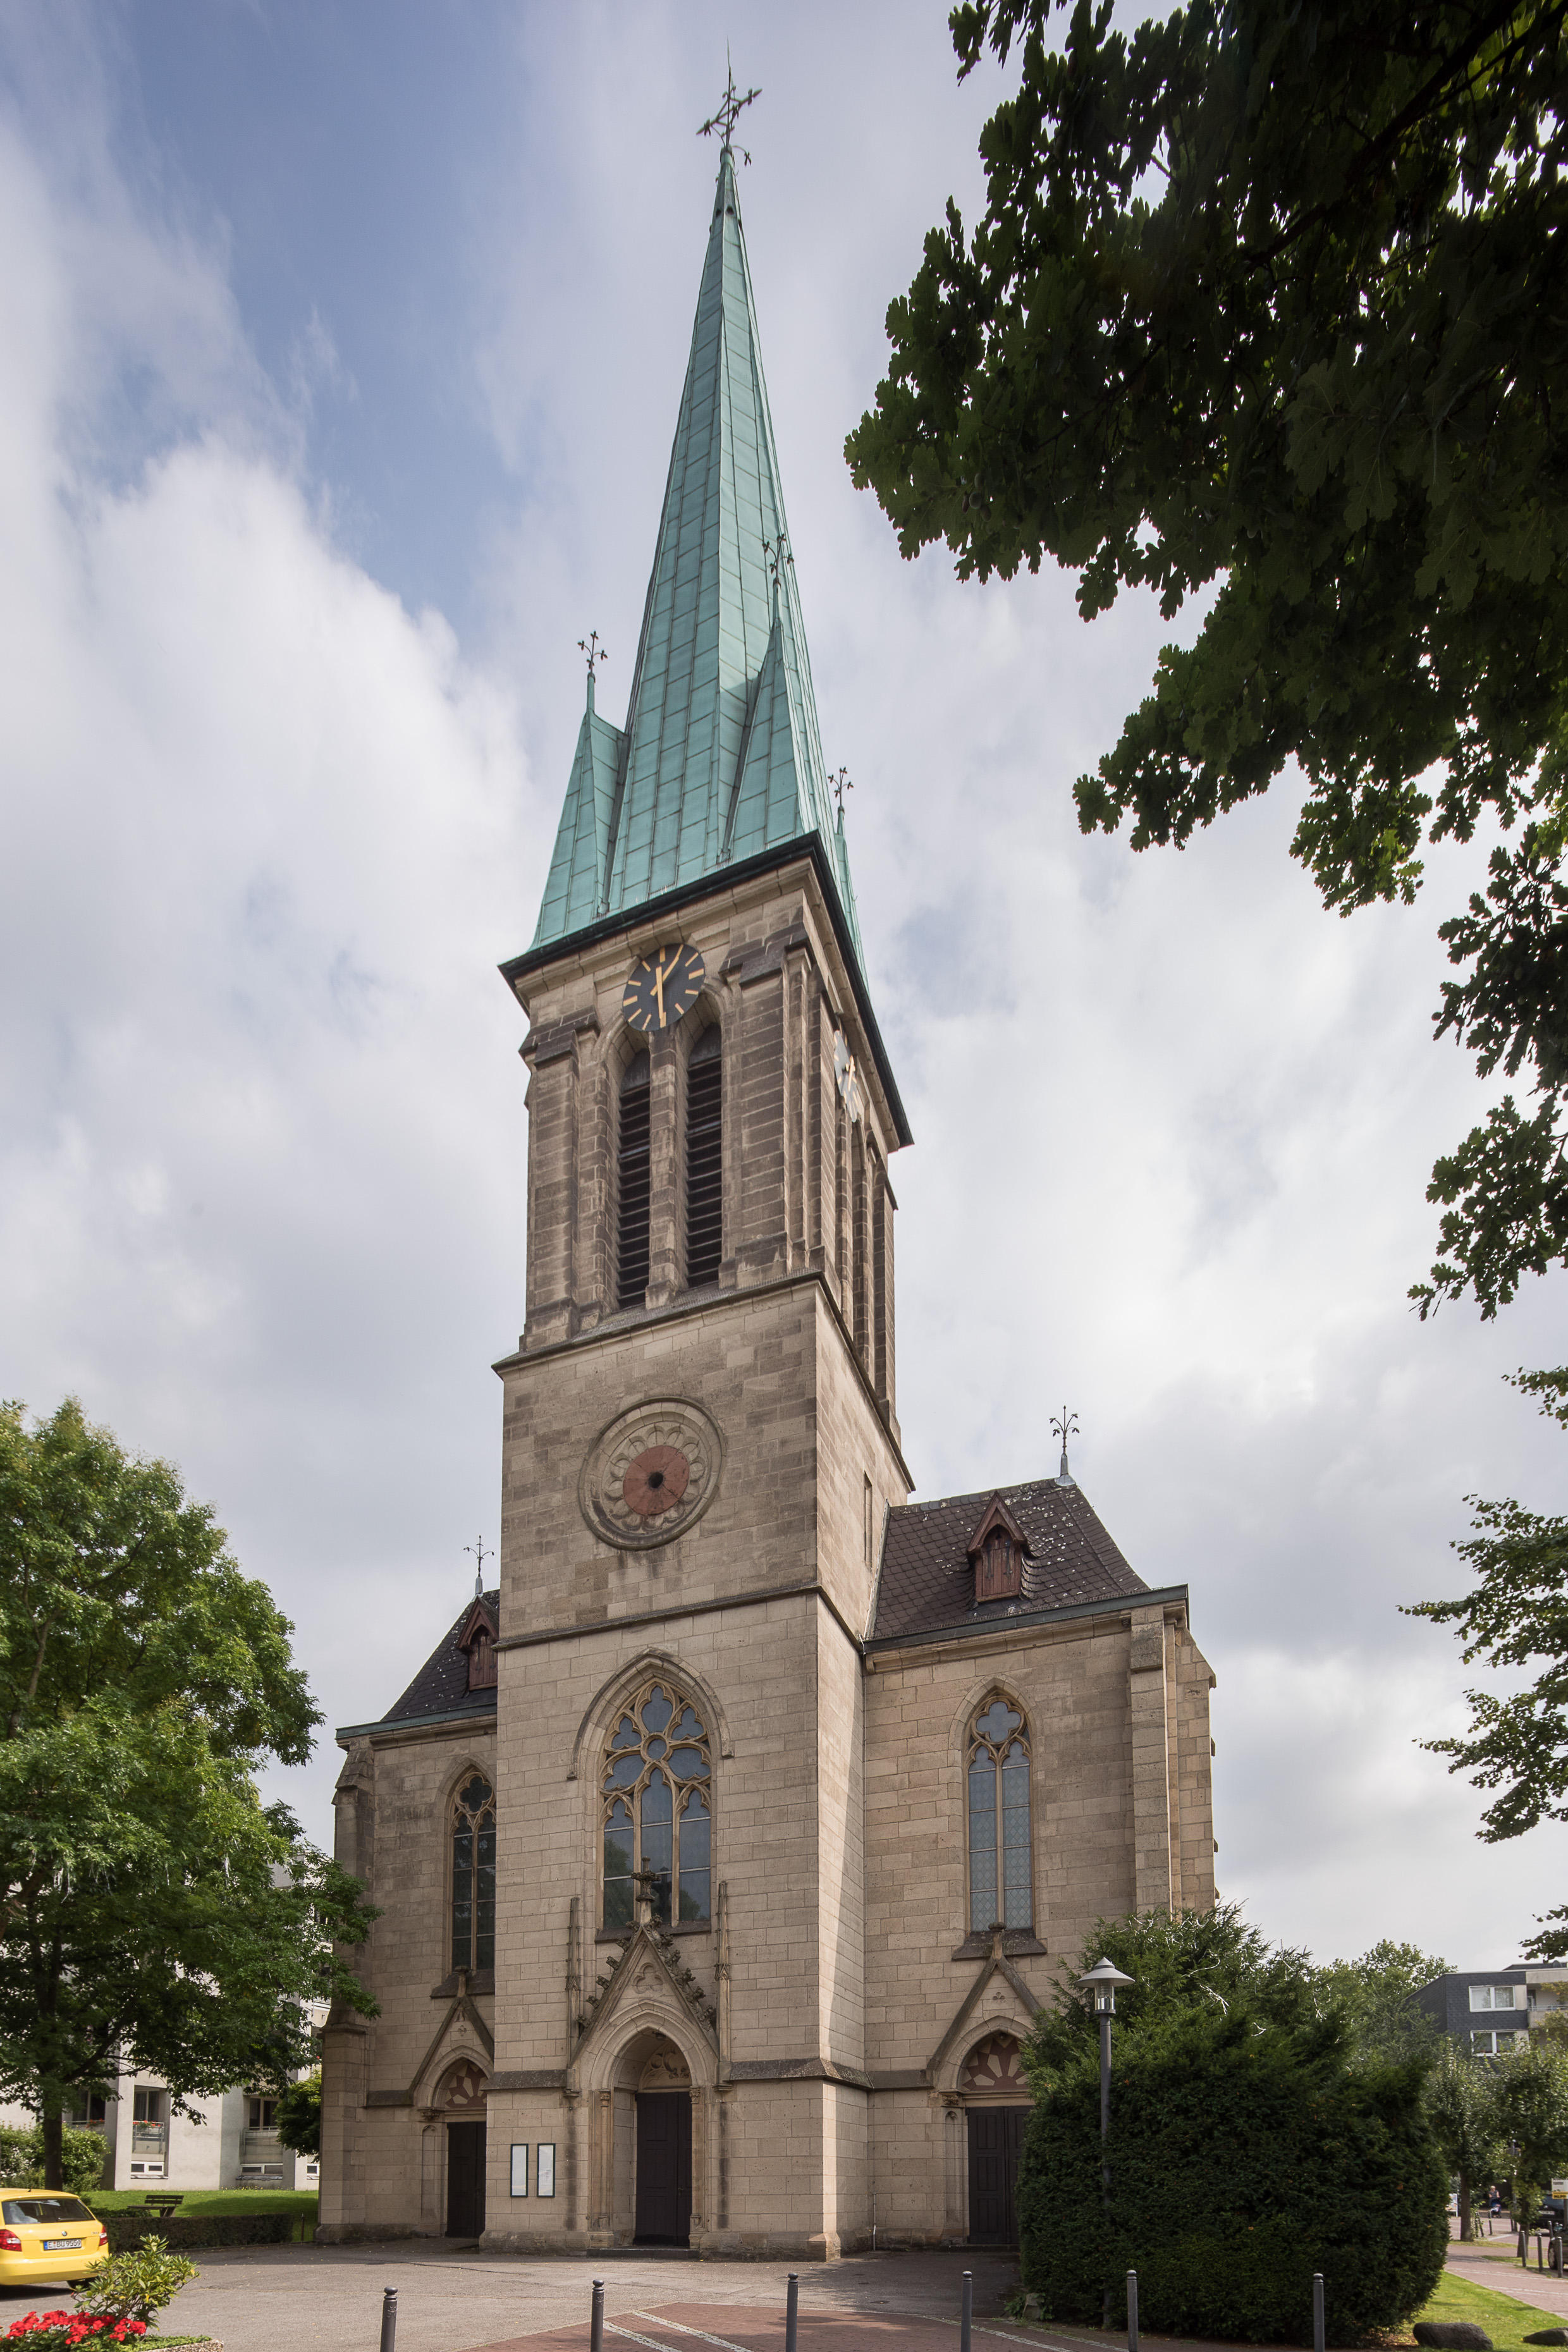 Bild der Friedenskirche Steele - Evangelische Kirchengemeinde Königssteele